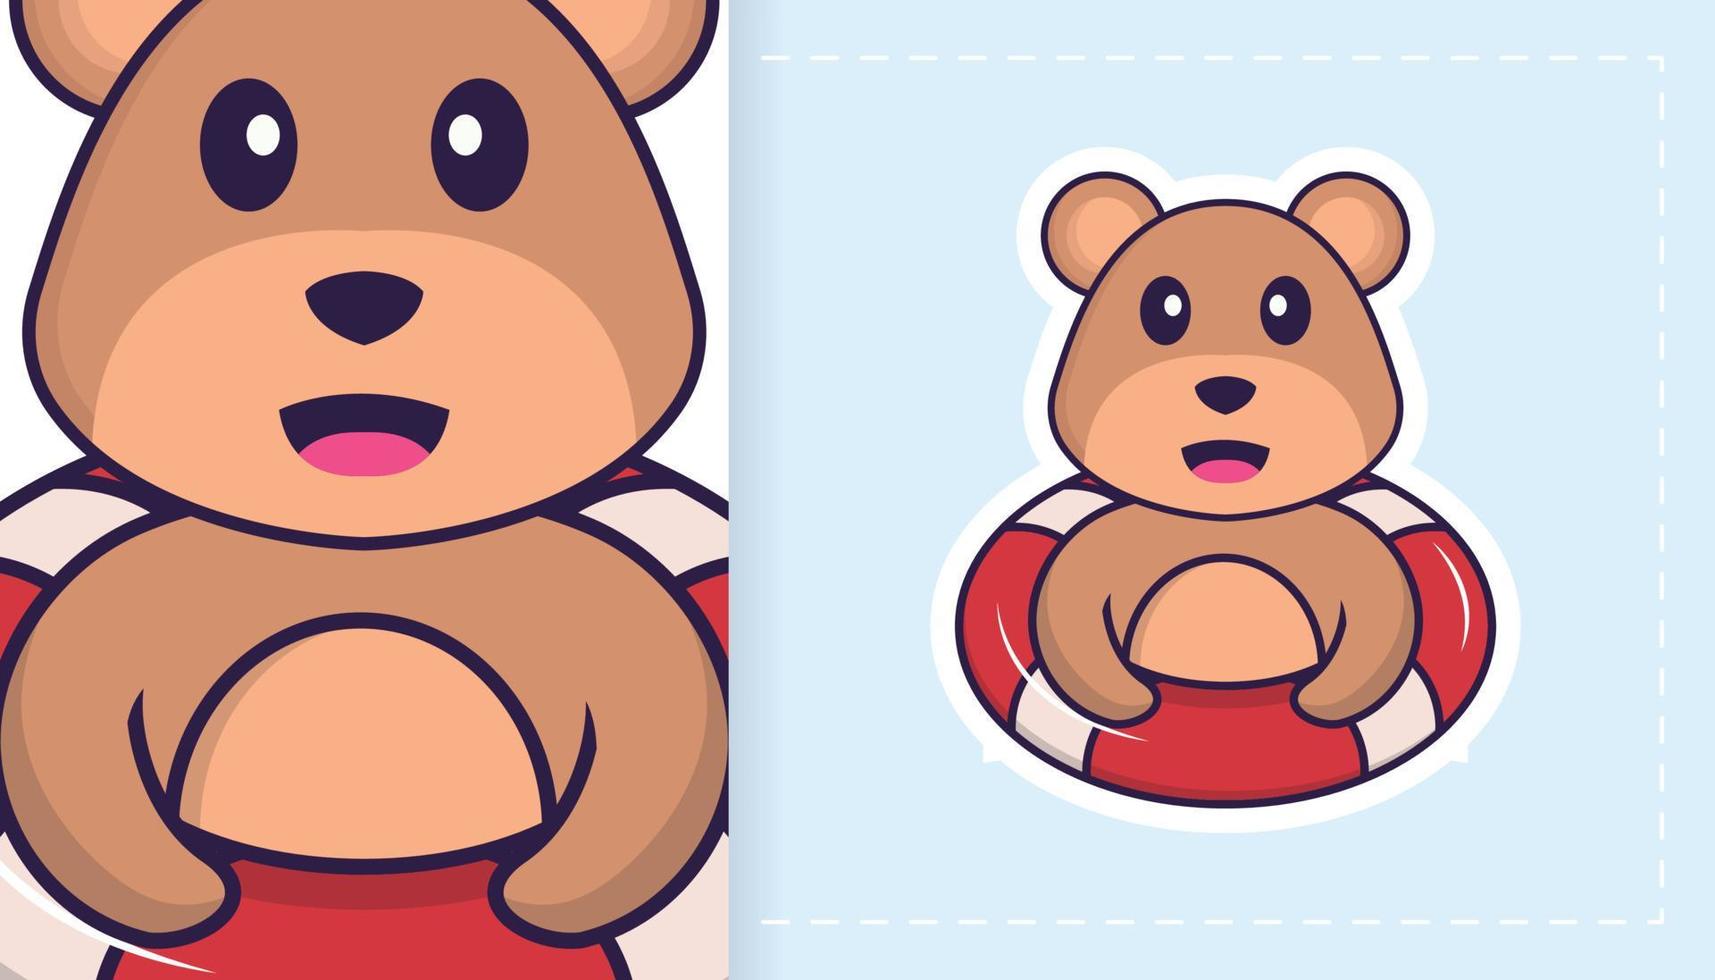 personnage de mascotte d'ours mignon. peut être utilisé pour des autocollants, des motifs, des patchs, des textiles, du papier. illustration vectorielle vecteur